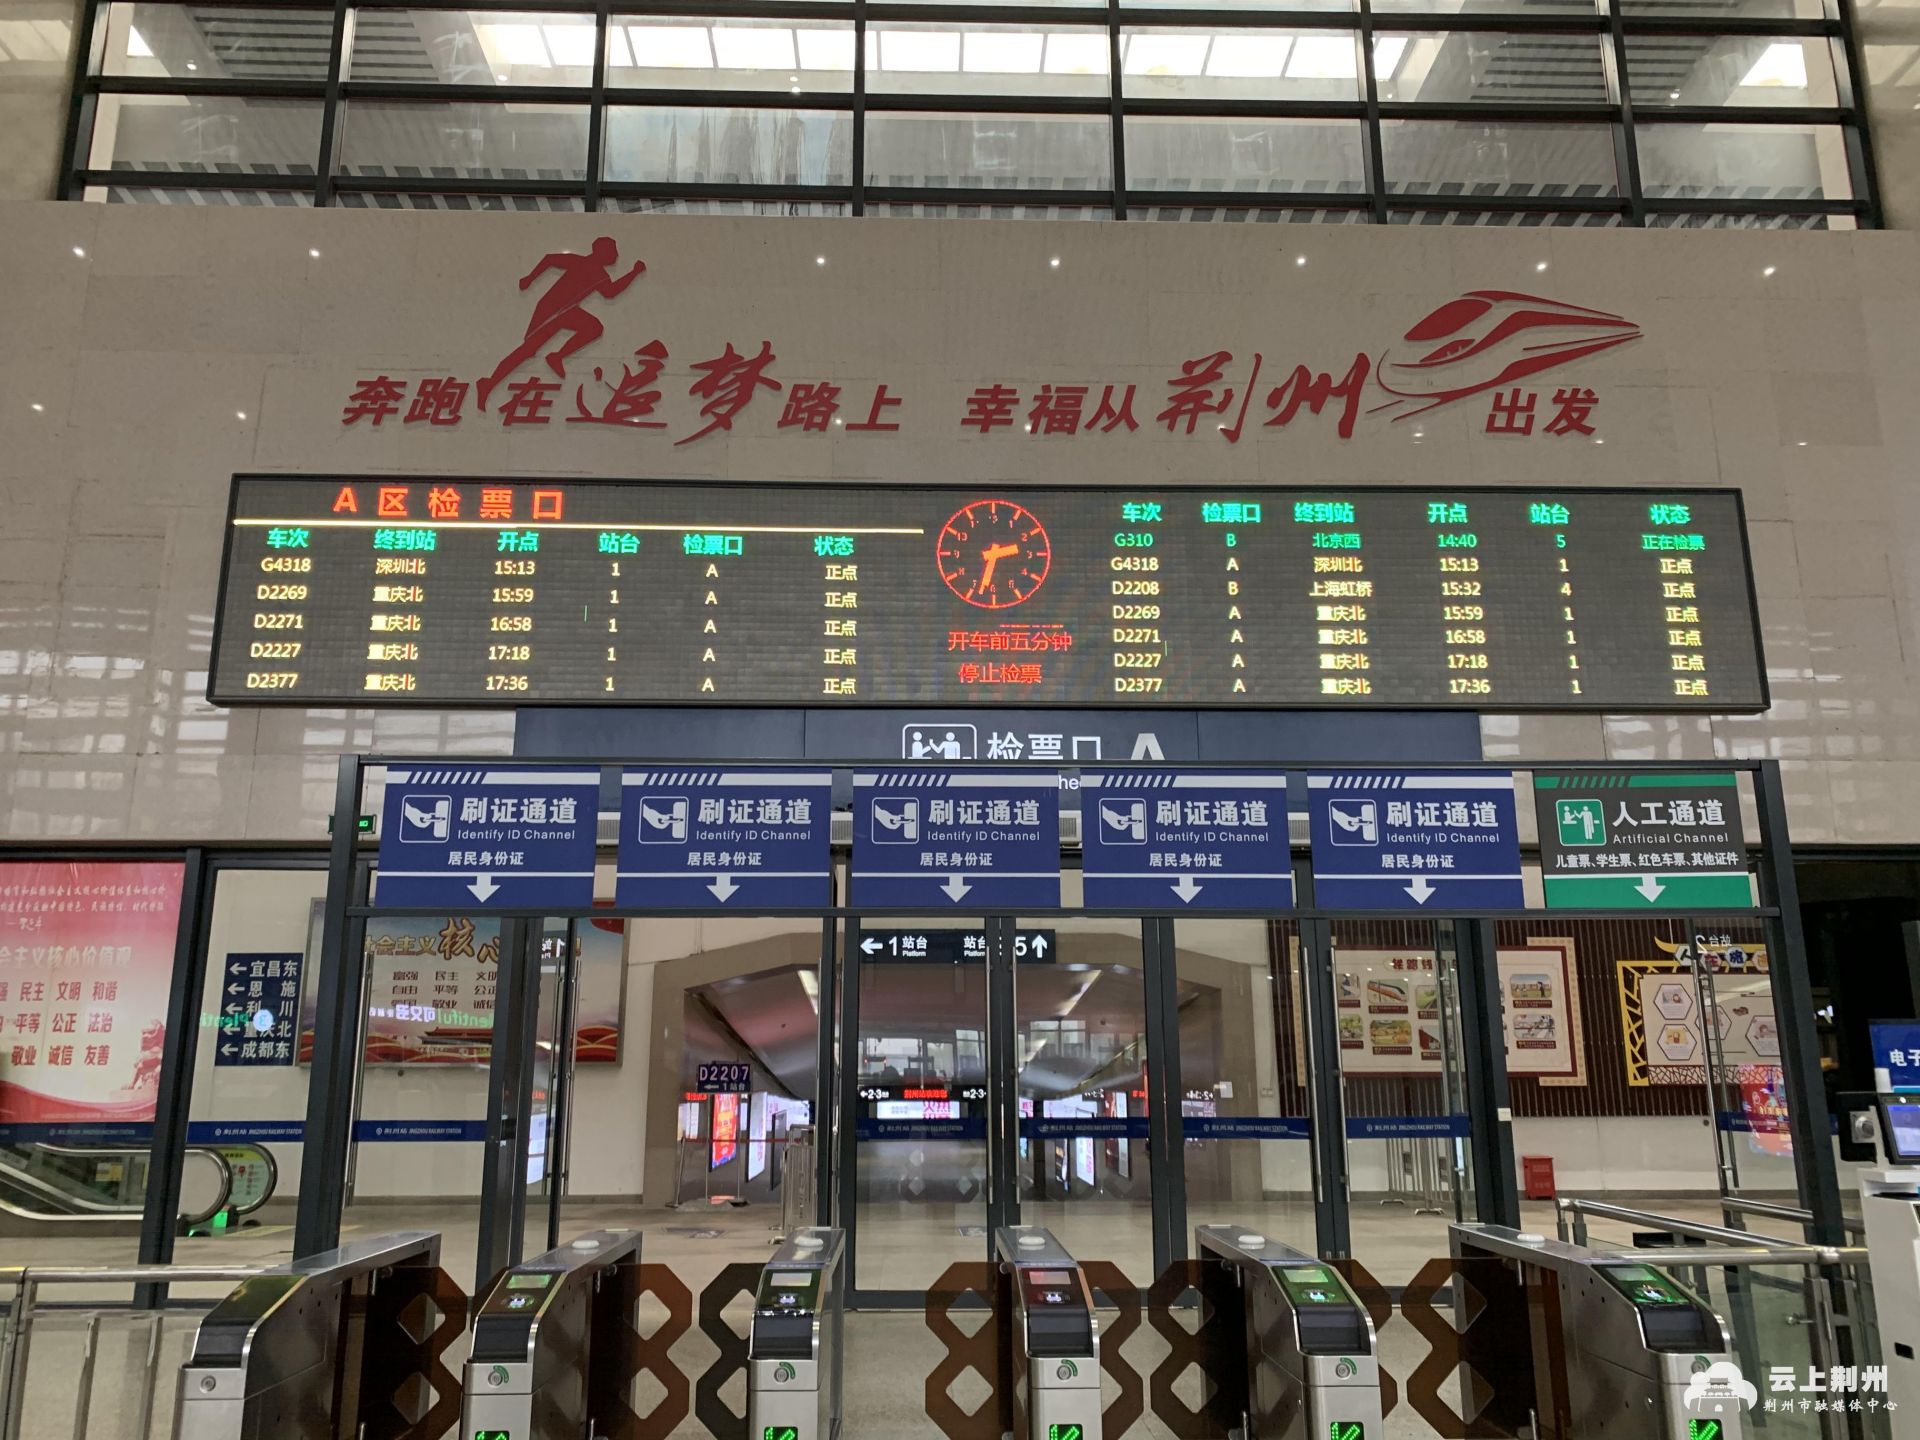 下午两点多,不少乘客已经冒着小雨赶到了荆州火车站候车